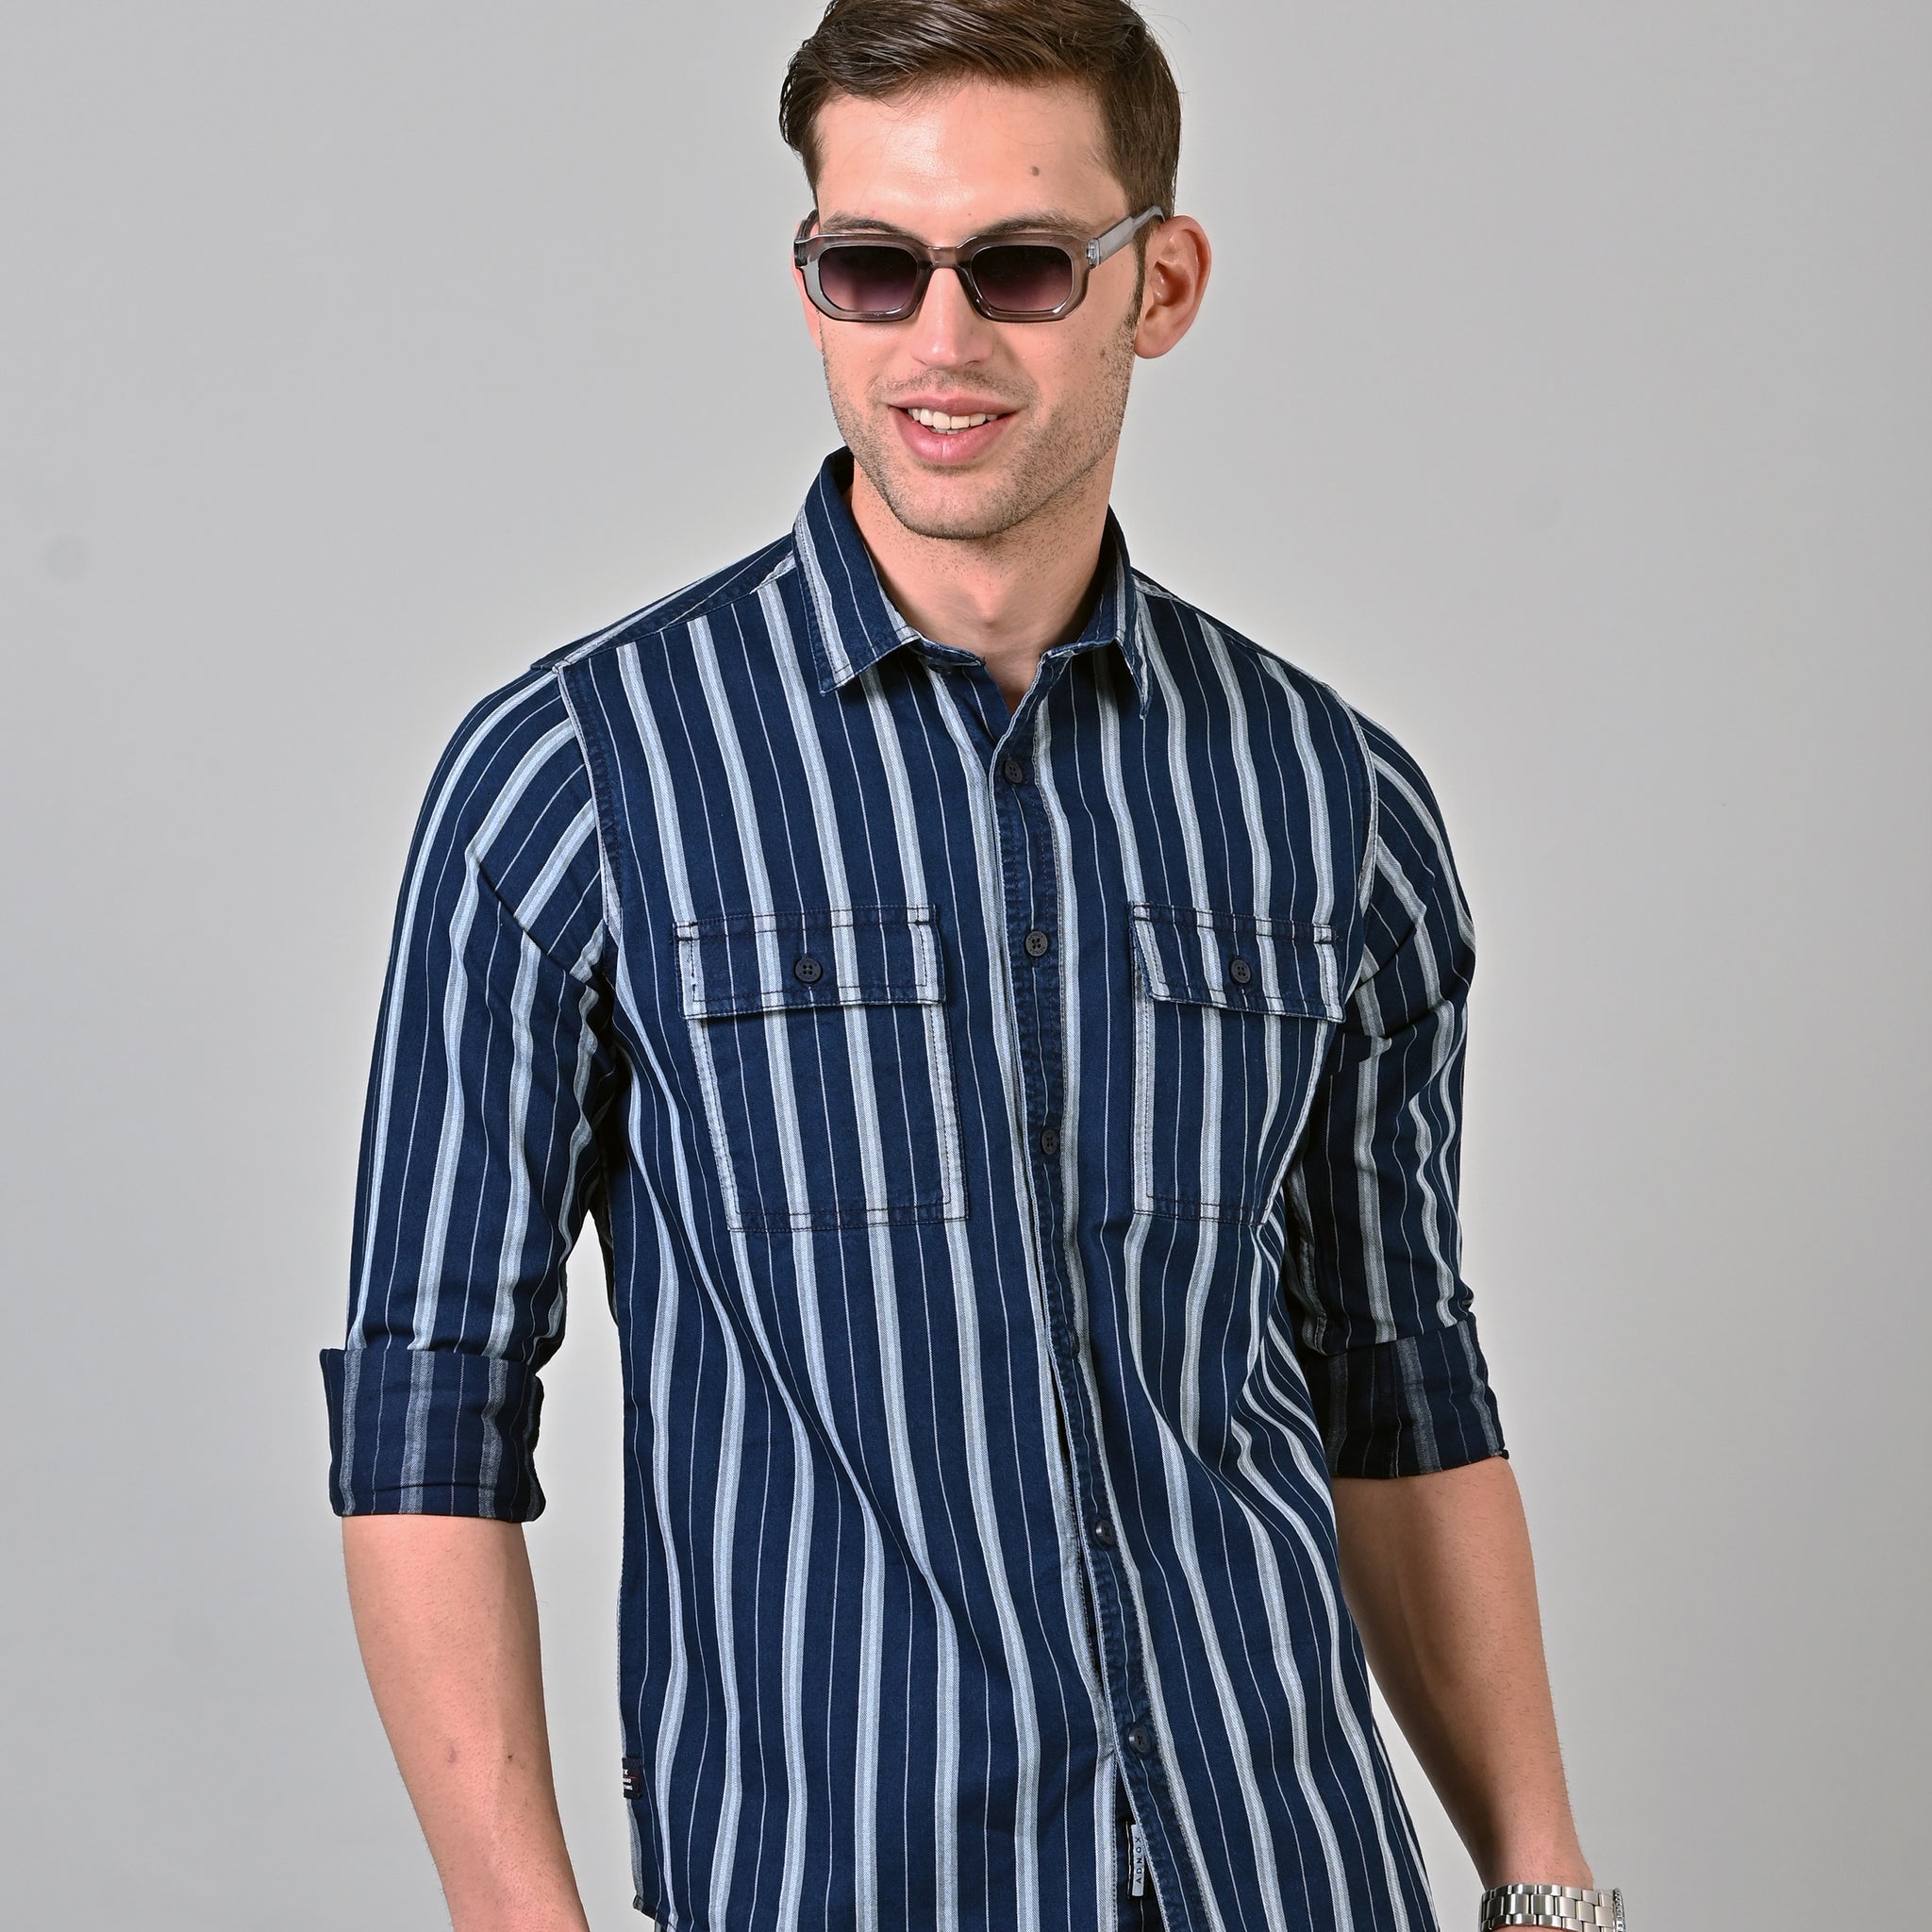 Indigo Stripes Shirt